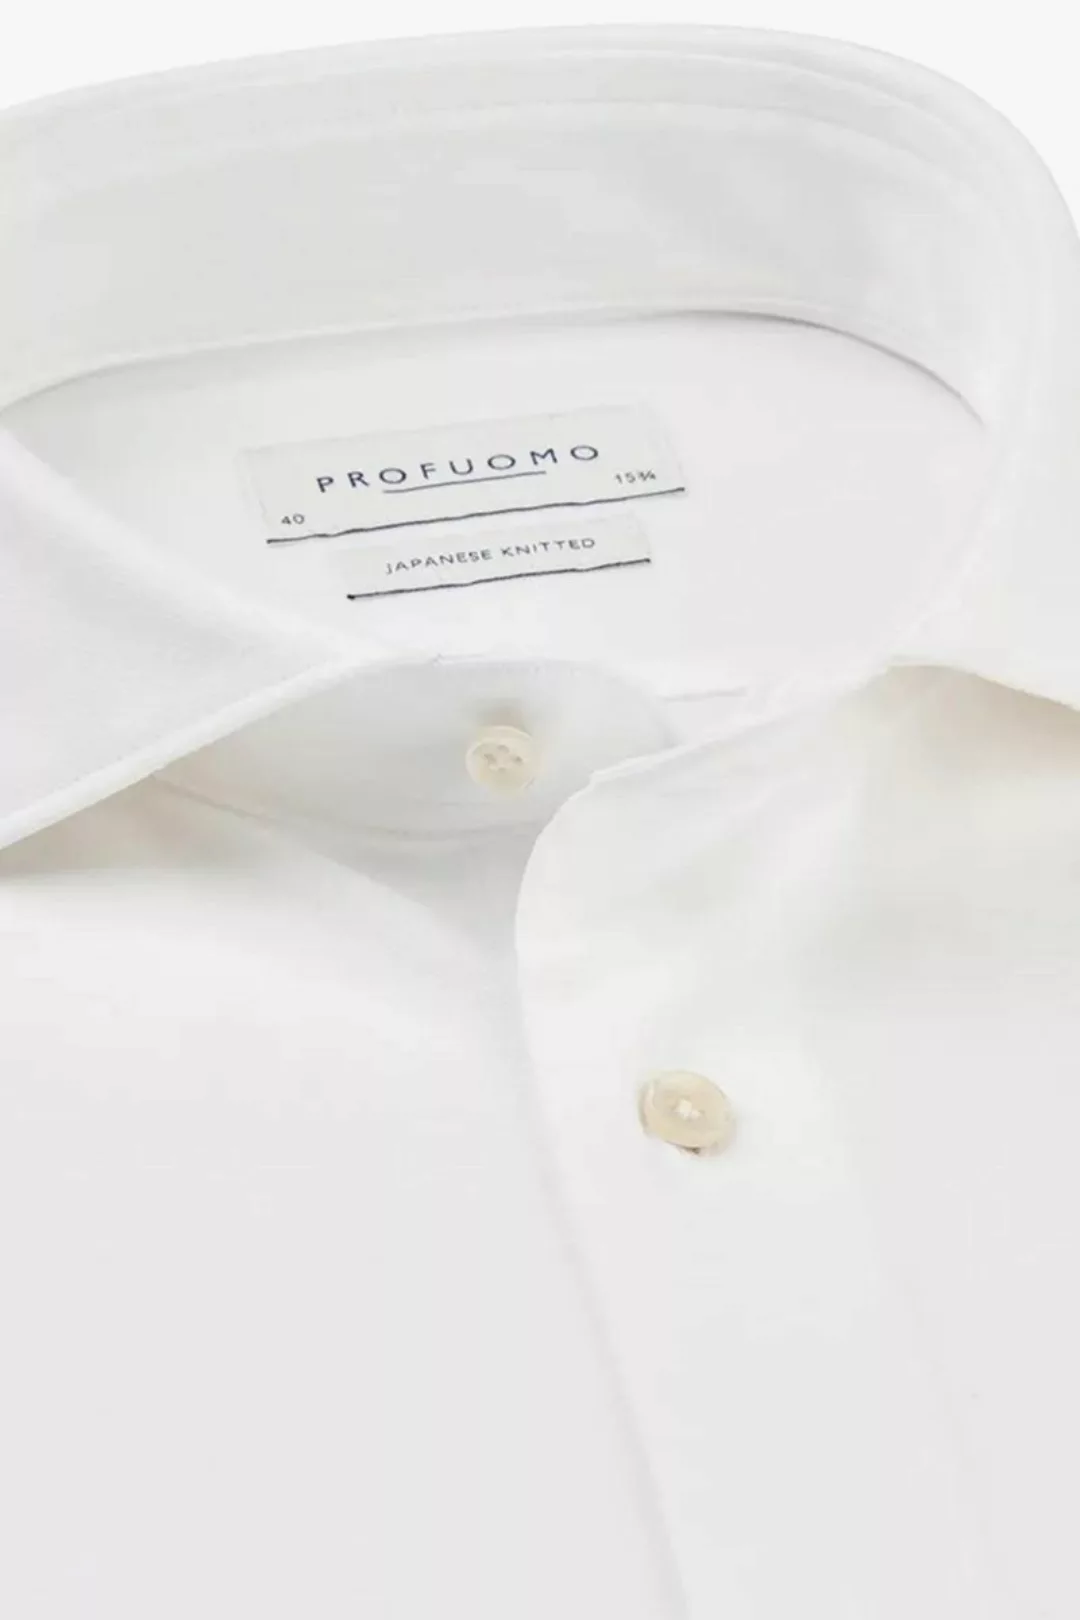 Profuomo Hemd Japanese Knitted Weiß - Größe 37 günstig online kaufen